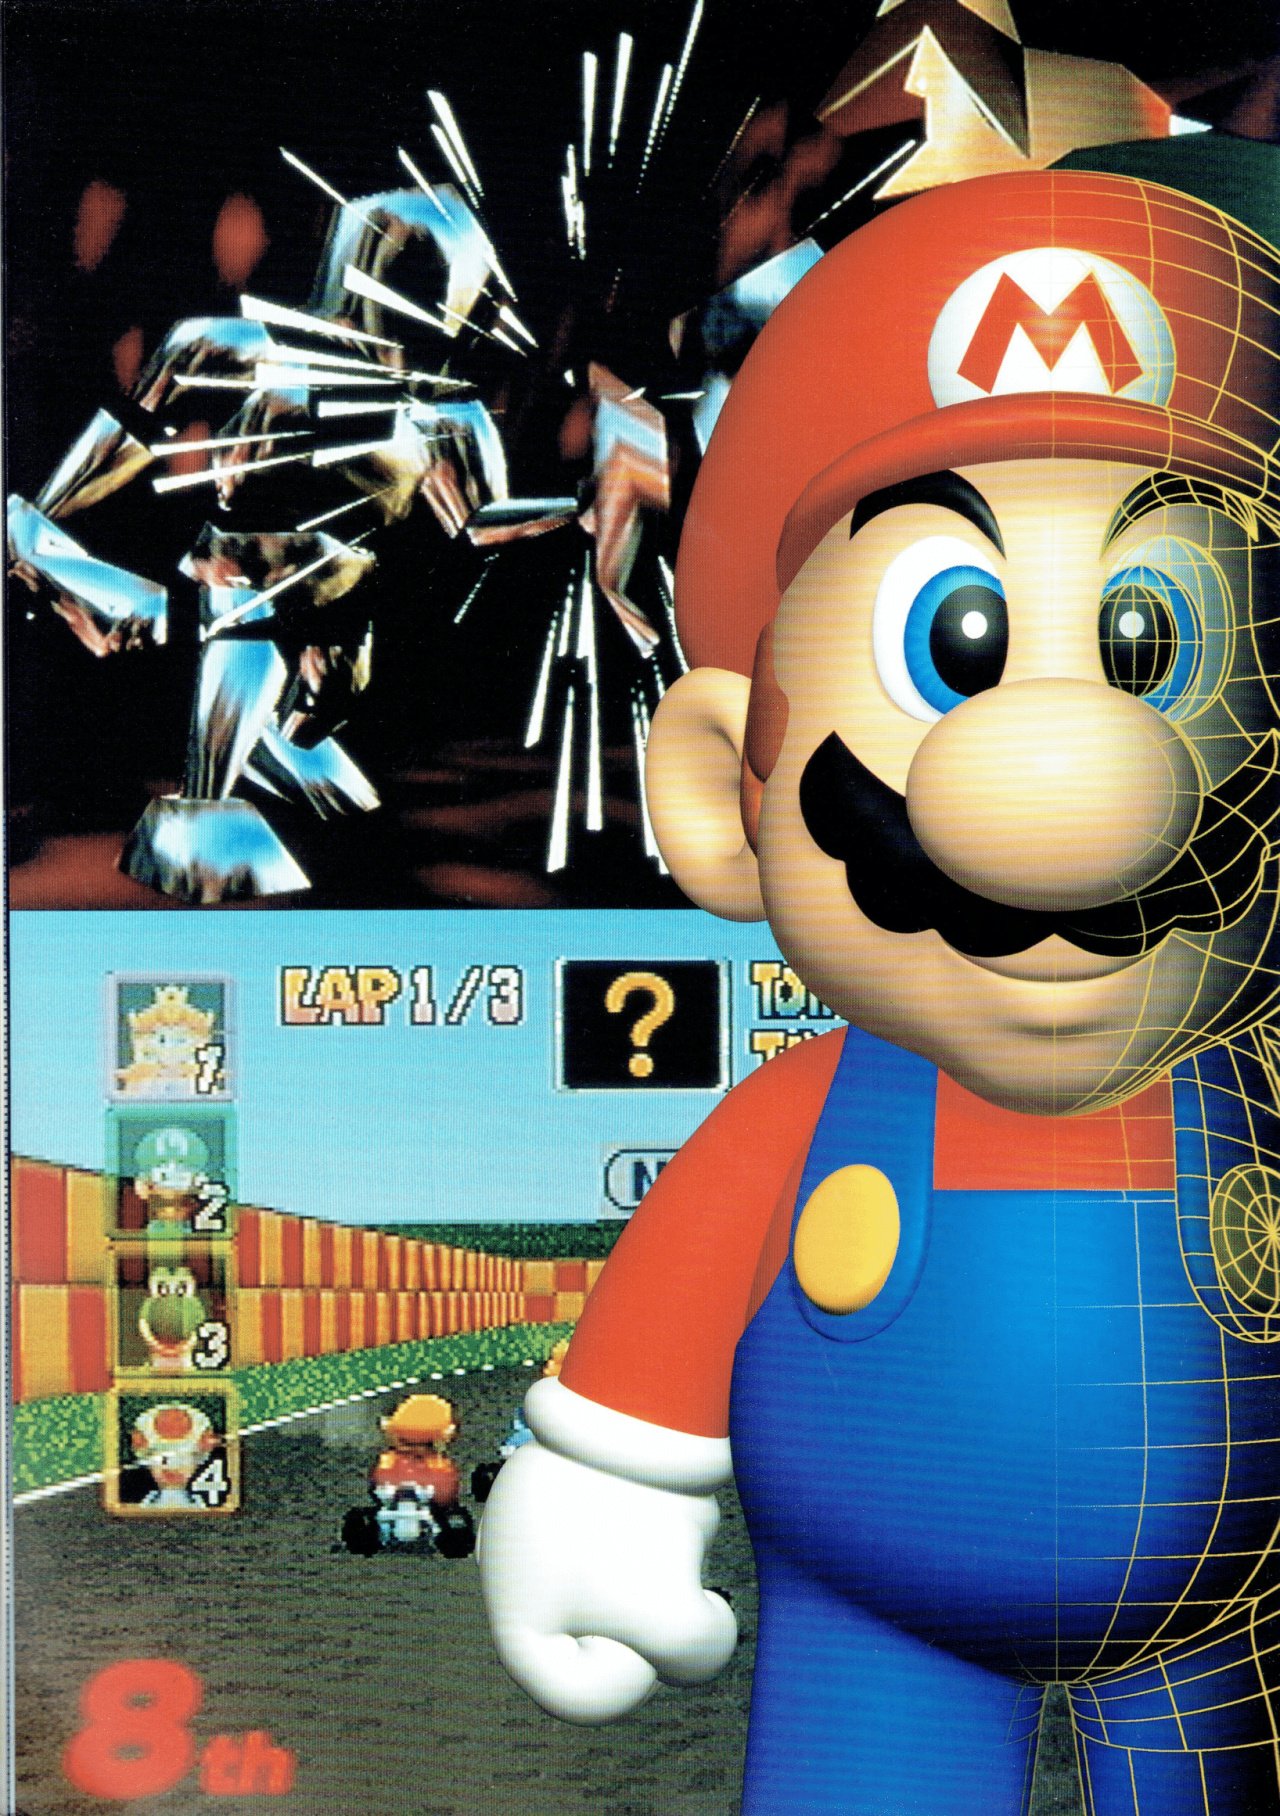 Super Mario 64: a inovação e o impacto causados pelo clássico da Nintendo -  Nintendo Blast